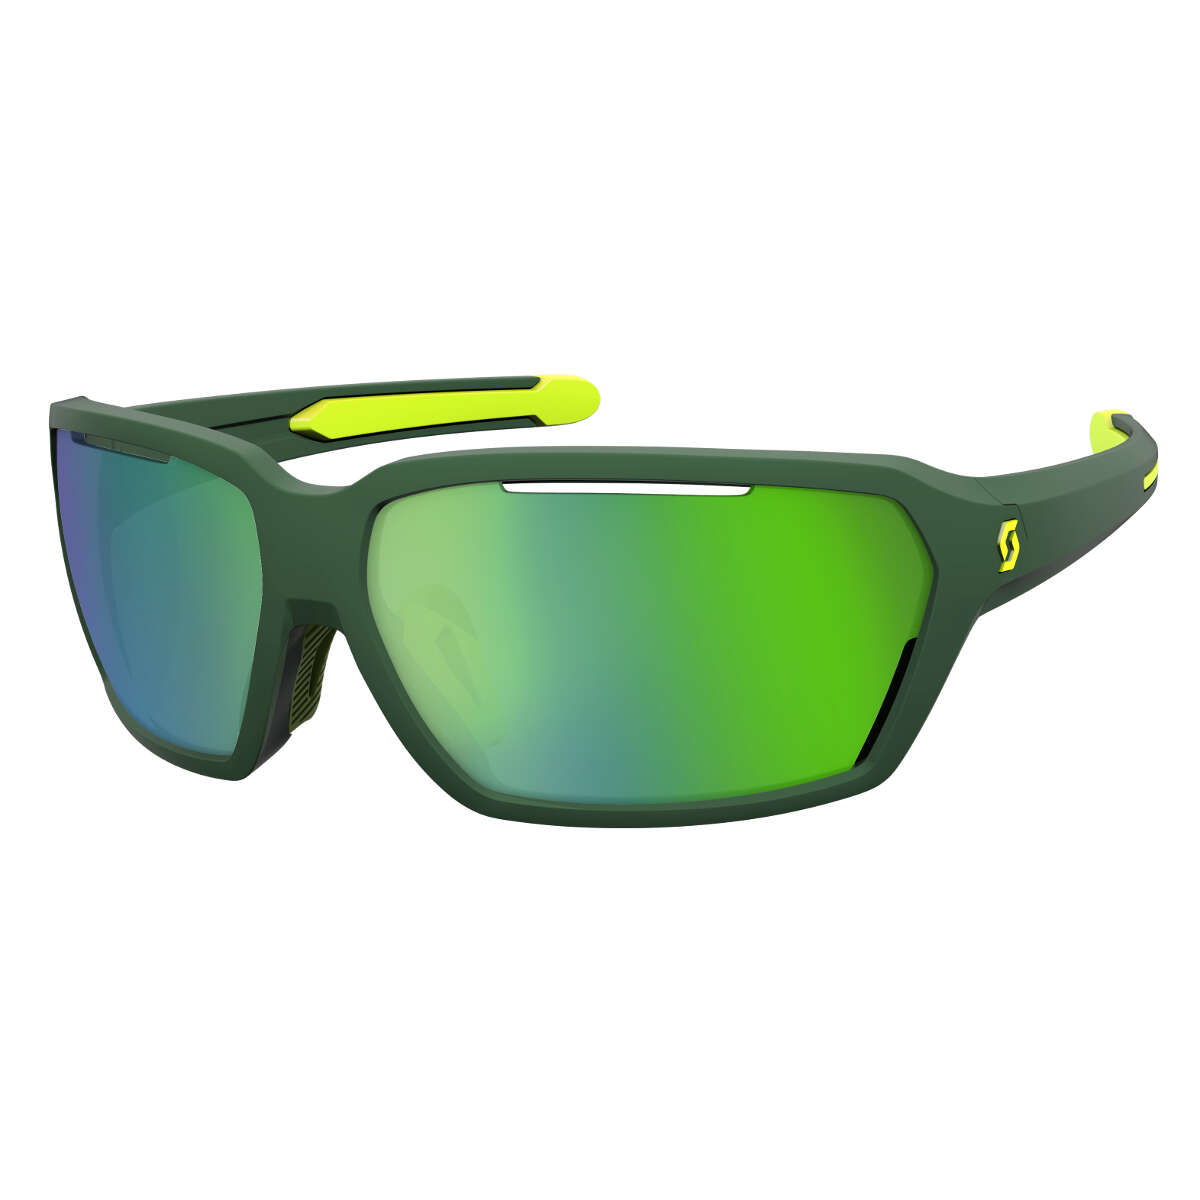 Scott Sportbrille Vector Grün/Gelb - Green Chrome